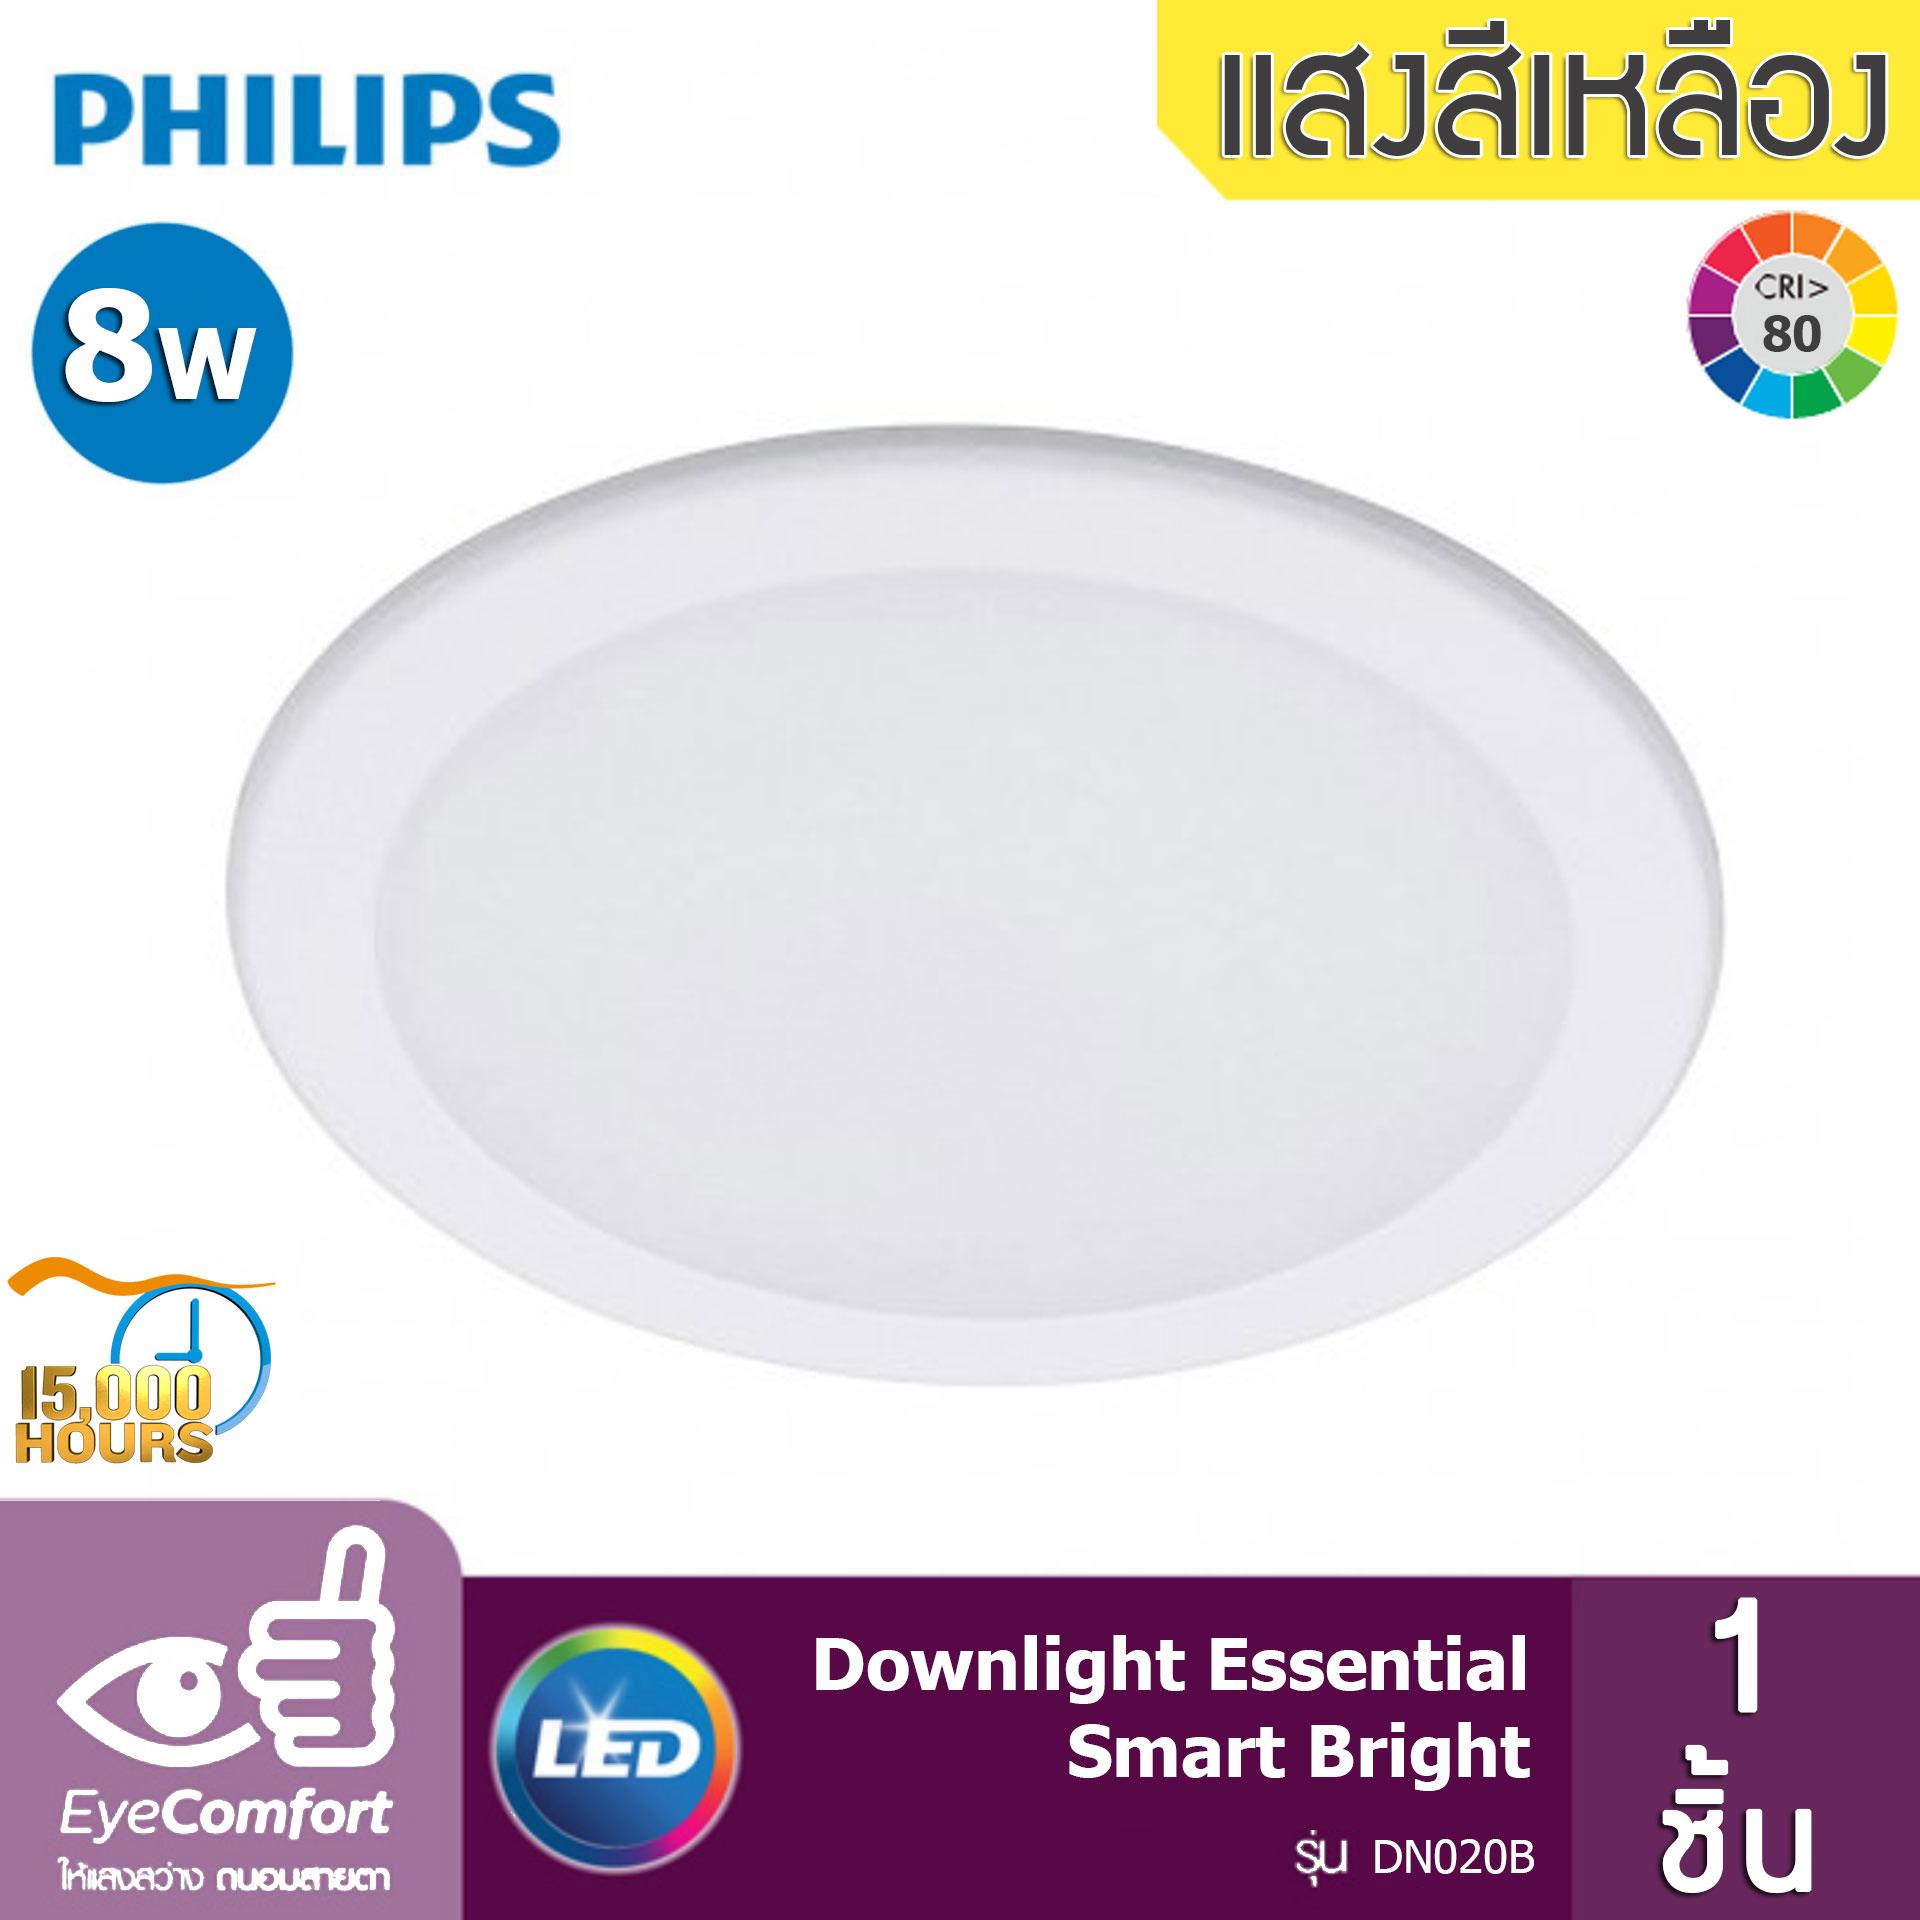 Philips โคมไฟดาวน์ไลท์ Essential Smart Bright LED ขนาด 8W 600 Lumen รุ่น DN020 (จำนวน 1 ชิ้น)